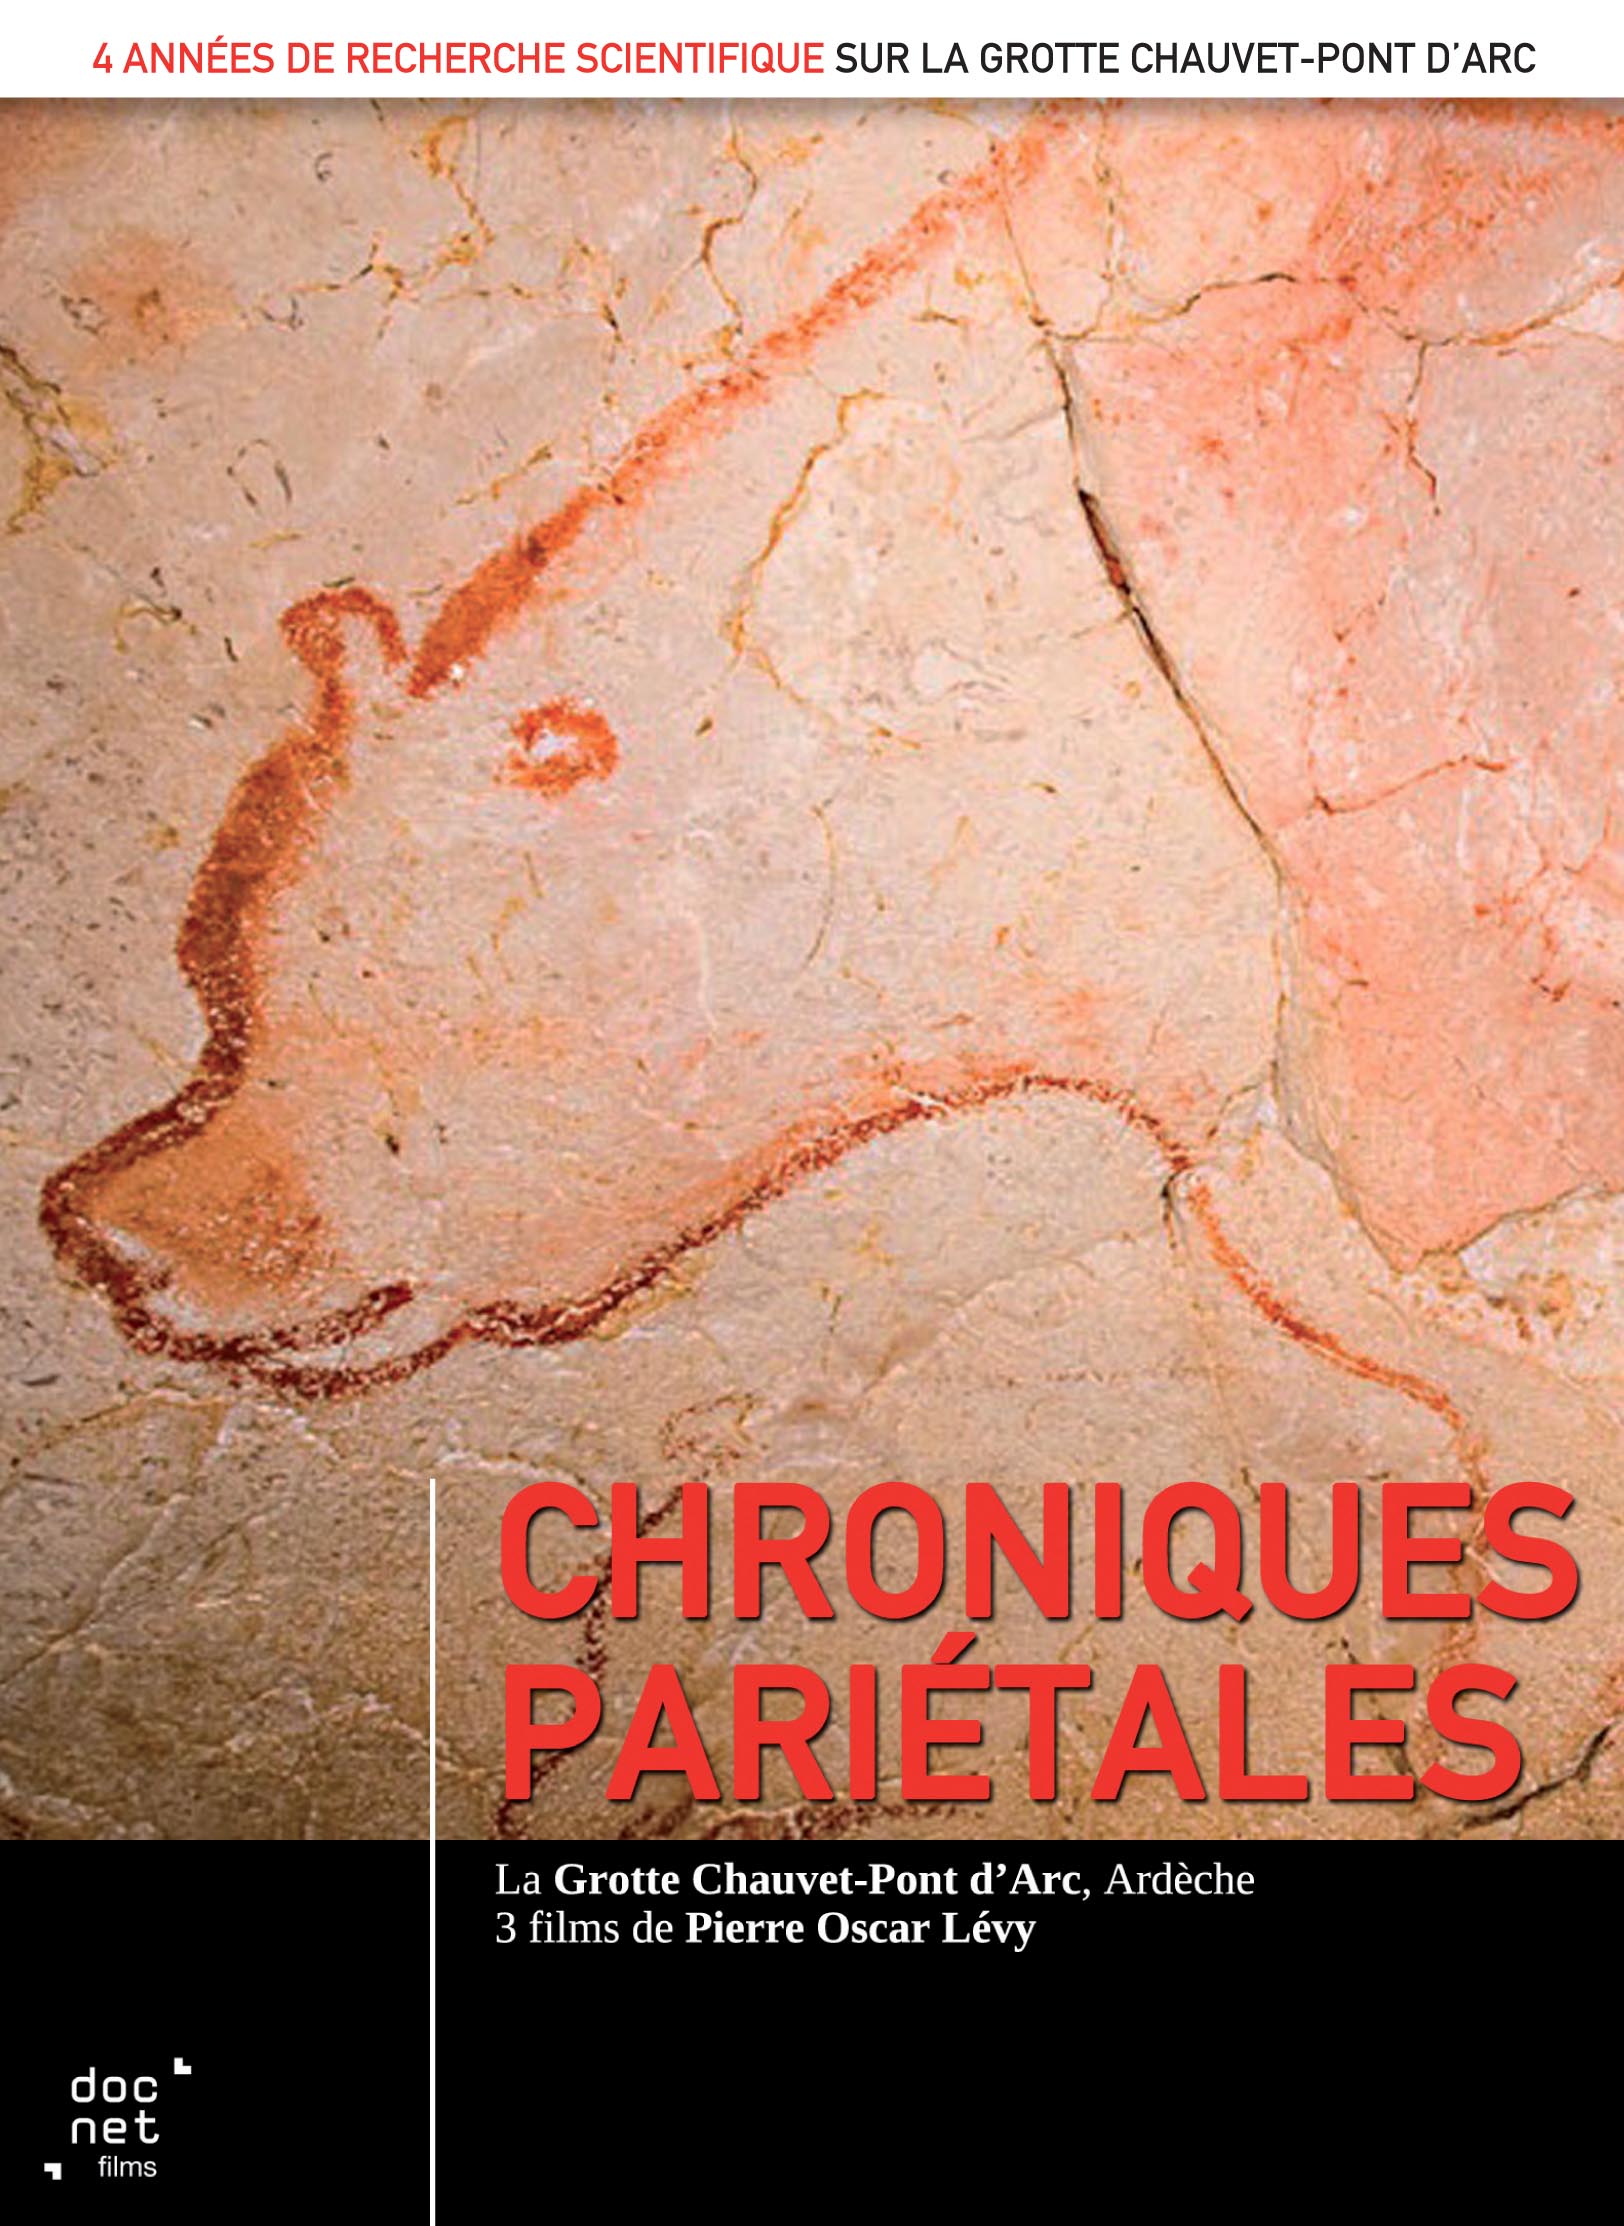 Chroniques pariétales. La grotte Chauvet-Pont d'Arc, Ardèche. 3 films de Pierre Oscar Levy, 2016. 2 DVD. Durée : 2h41.